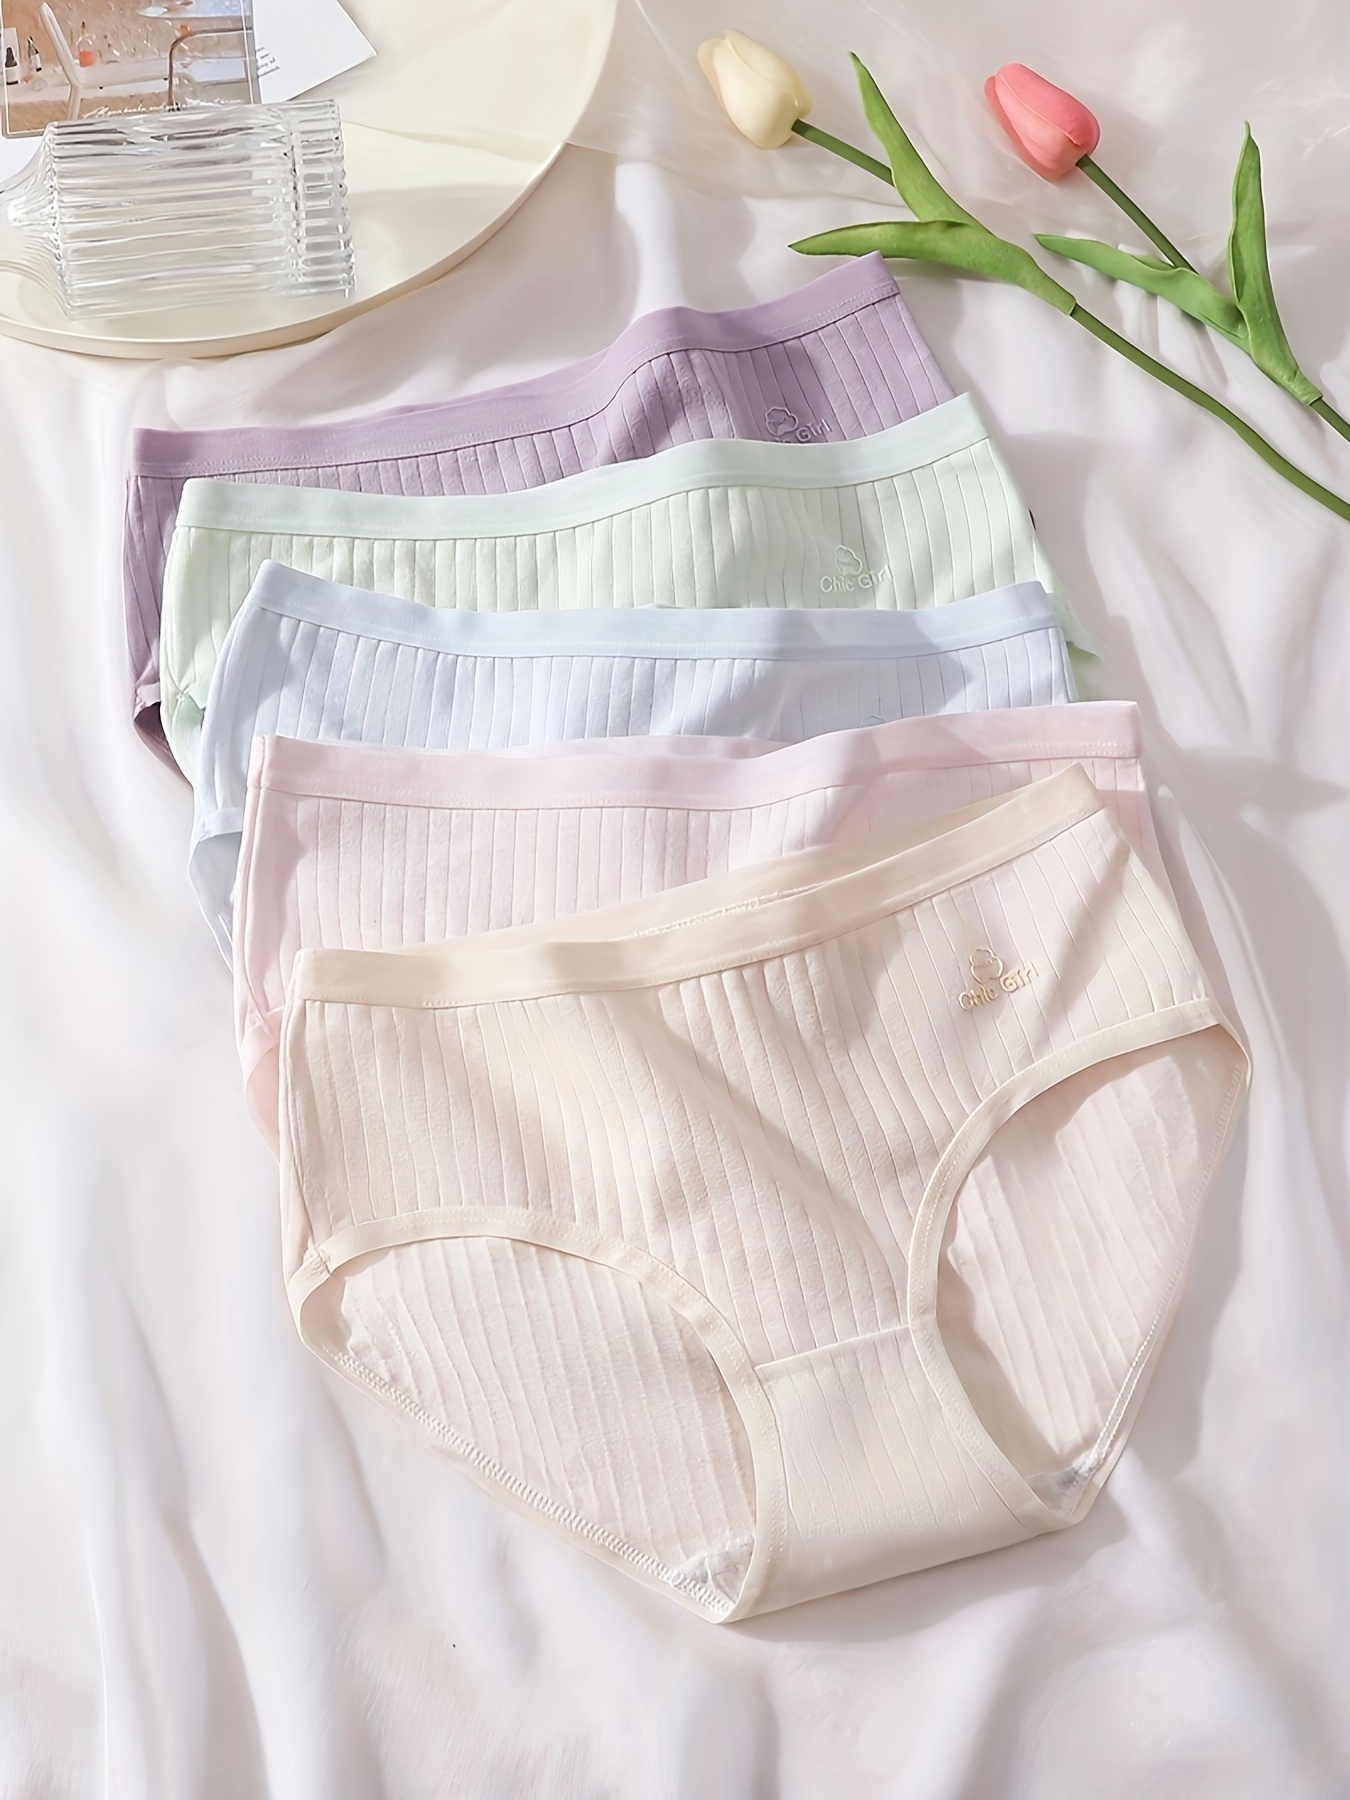 5pcs Letter & Heart Print Briefs, Comfy & Breathable Lace Trim Intimates  Panties, Women's Lingerie & Underwear